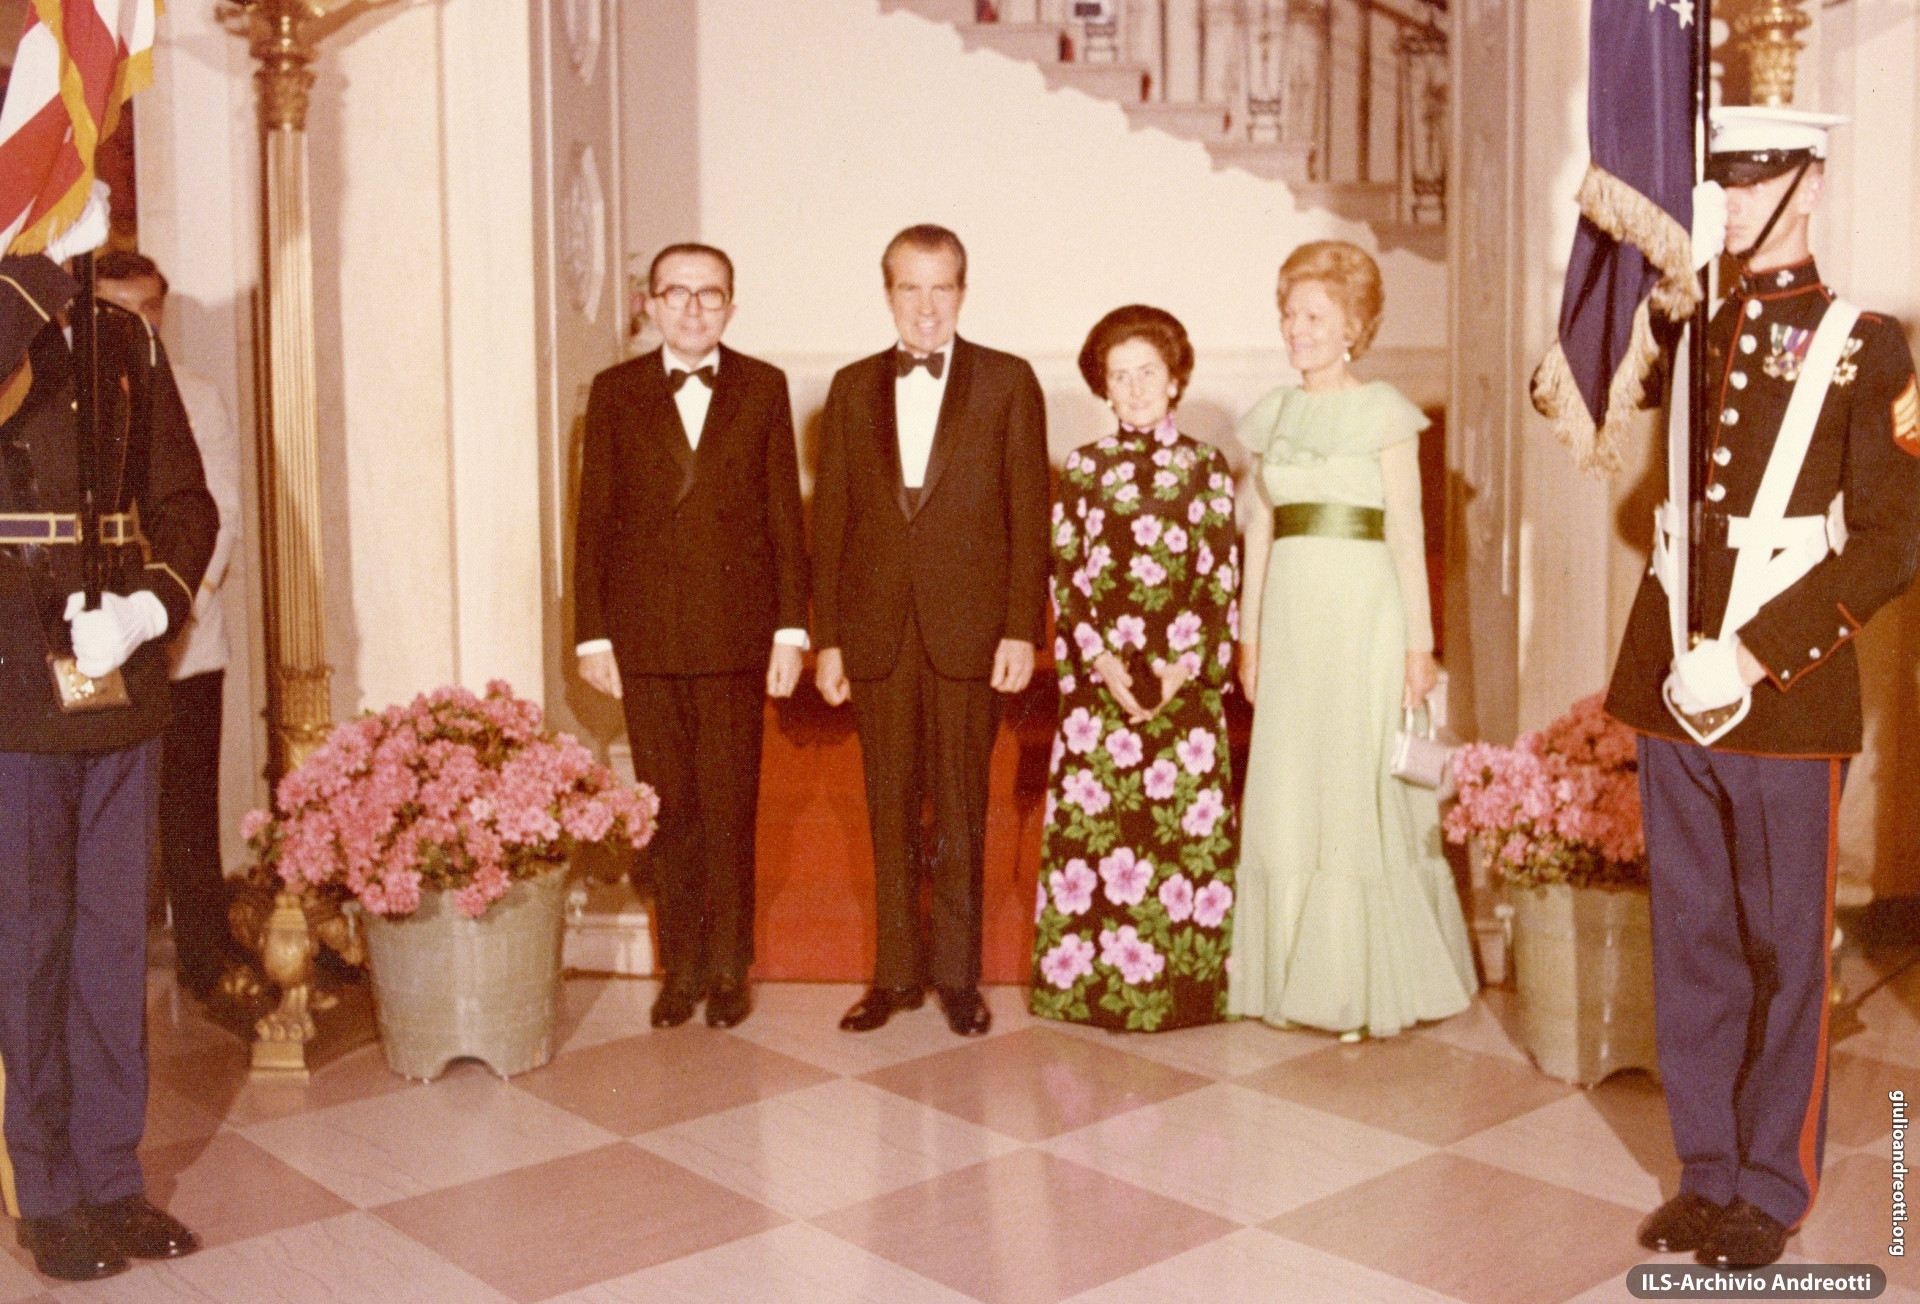 Visita di Andreotti in USA nell'aprile 1973. Cerimonia con Nixon alla Casa Bianca.